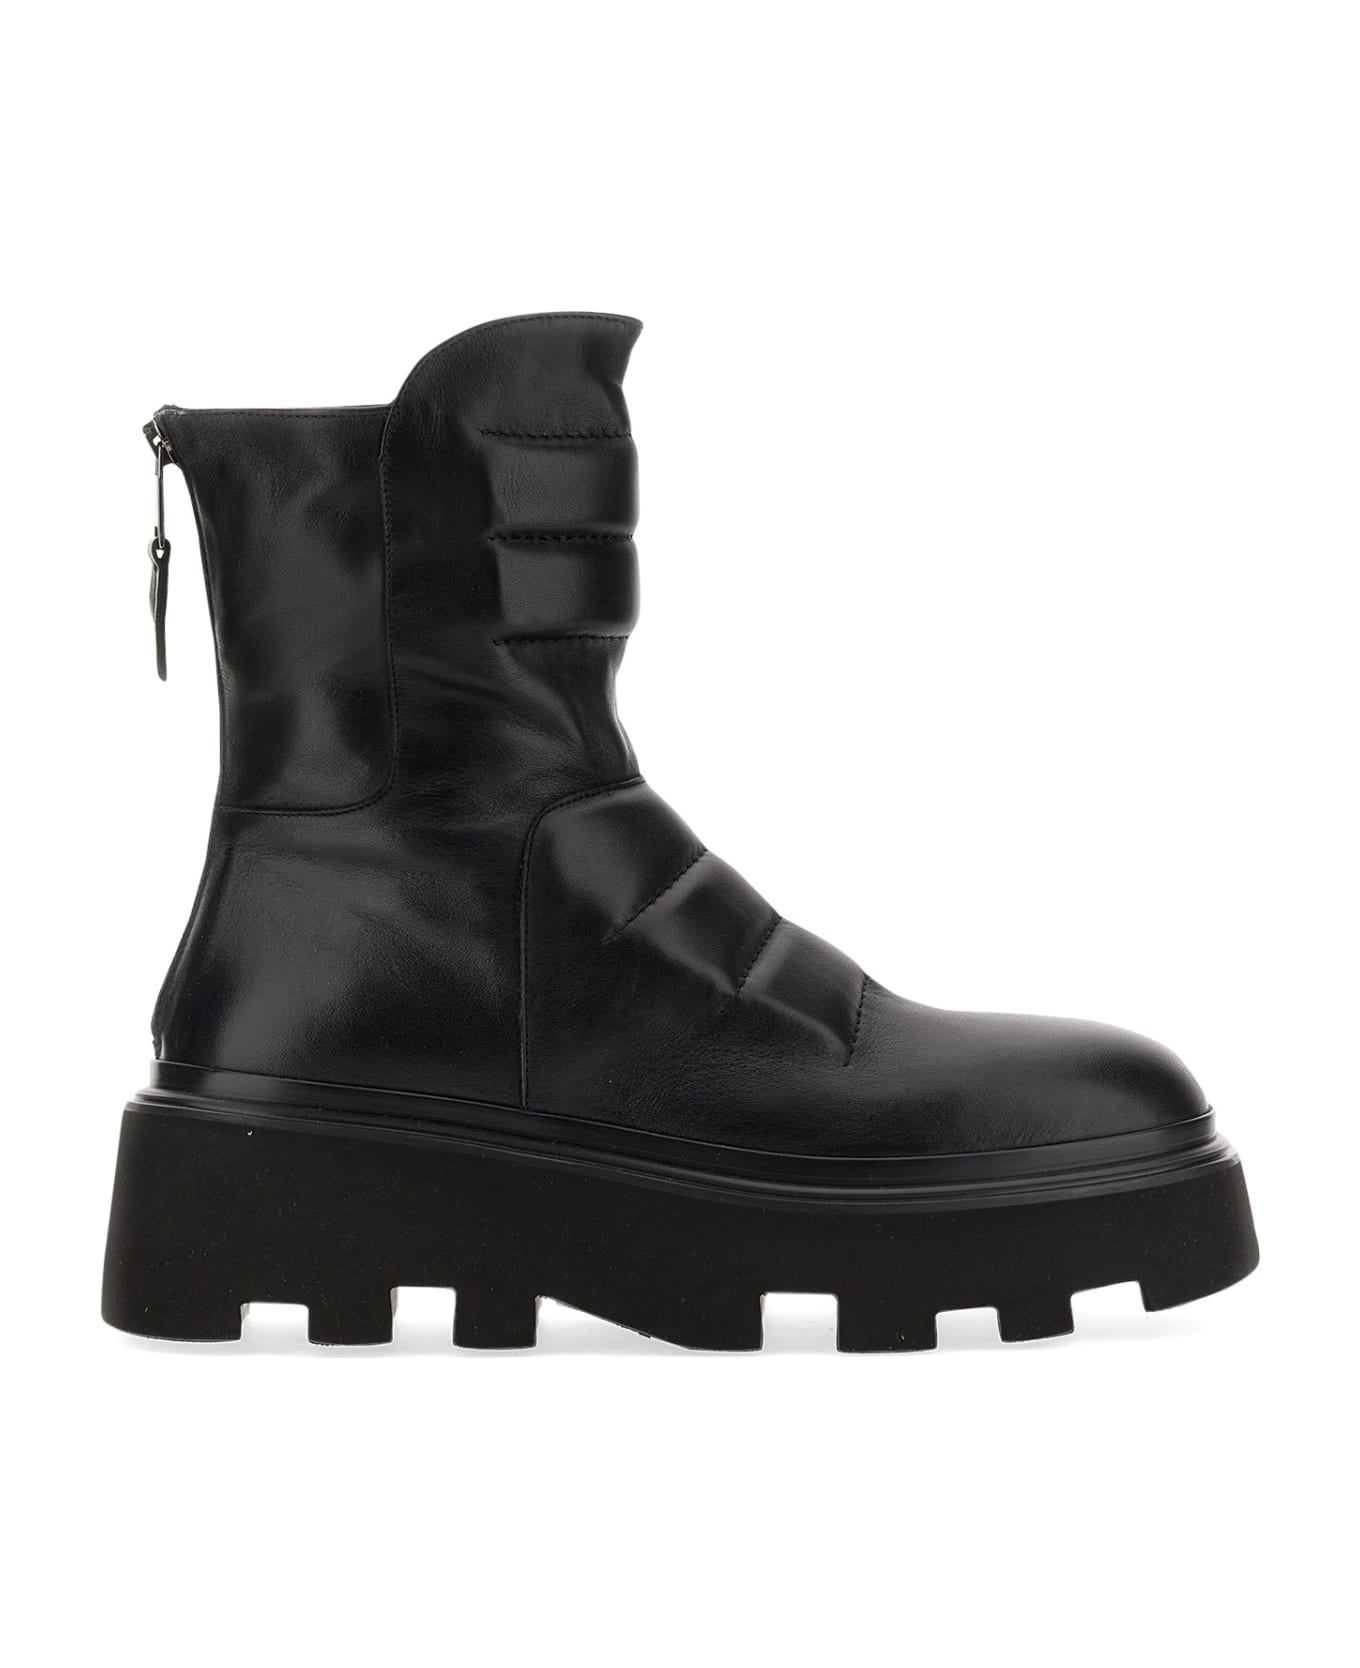 Elena Iachi Leather Boot - NERO